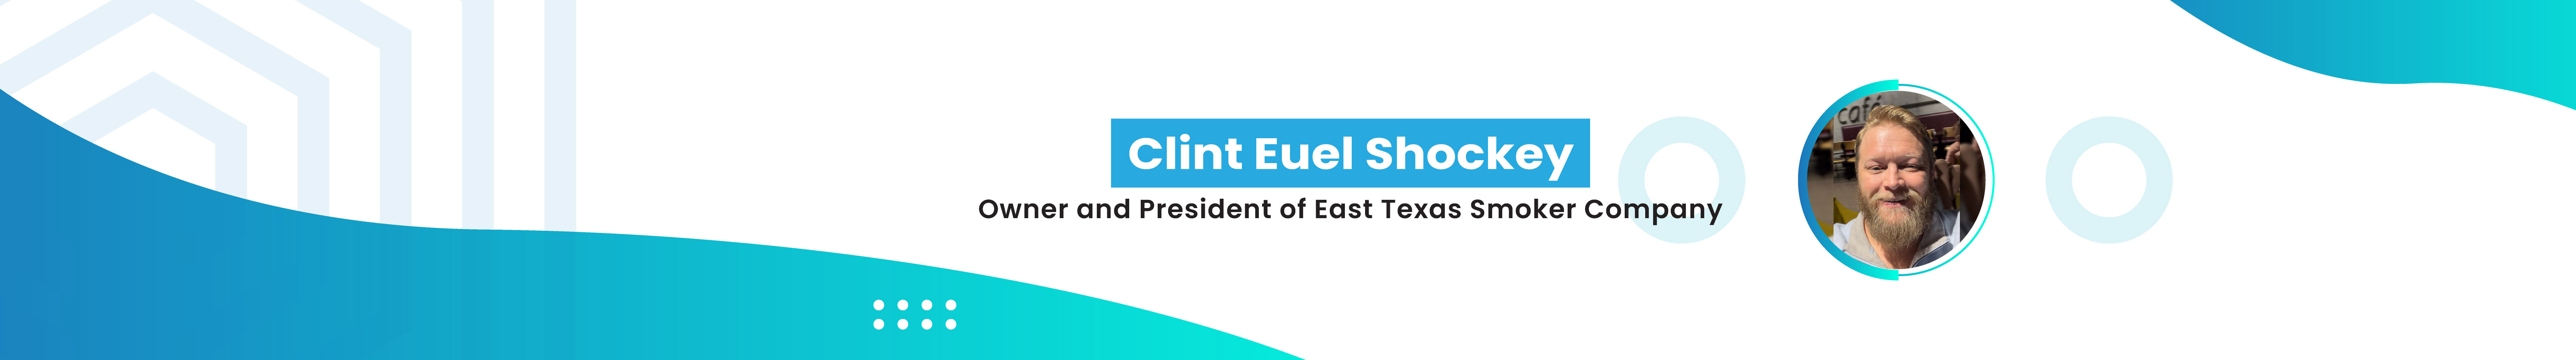 Profil-Banner von Clint Euel Shockey